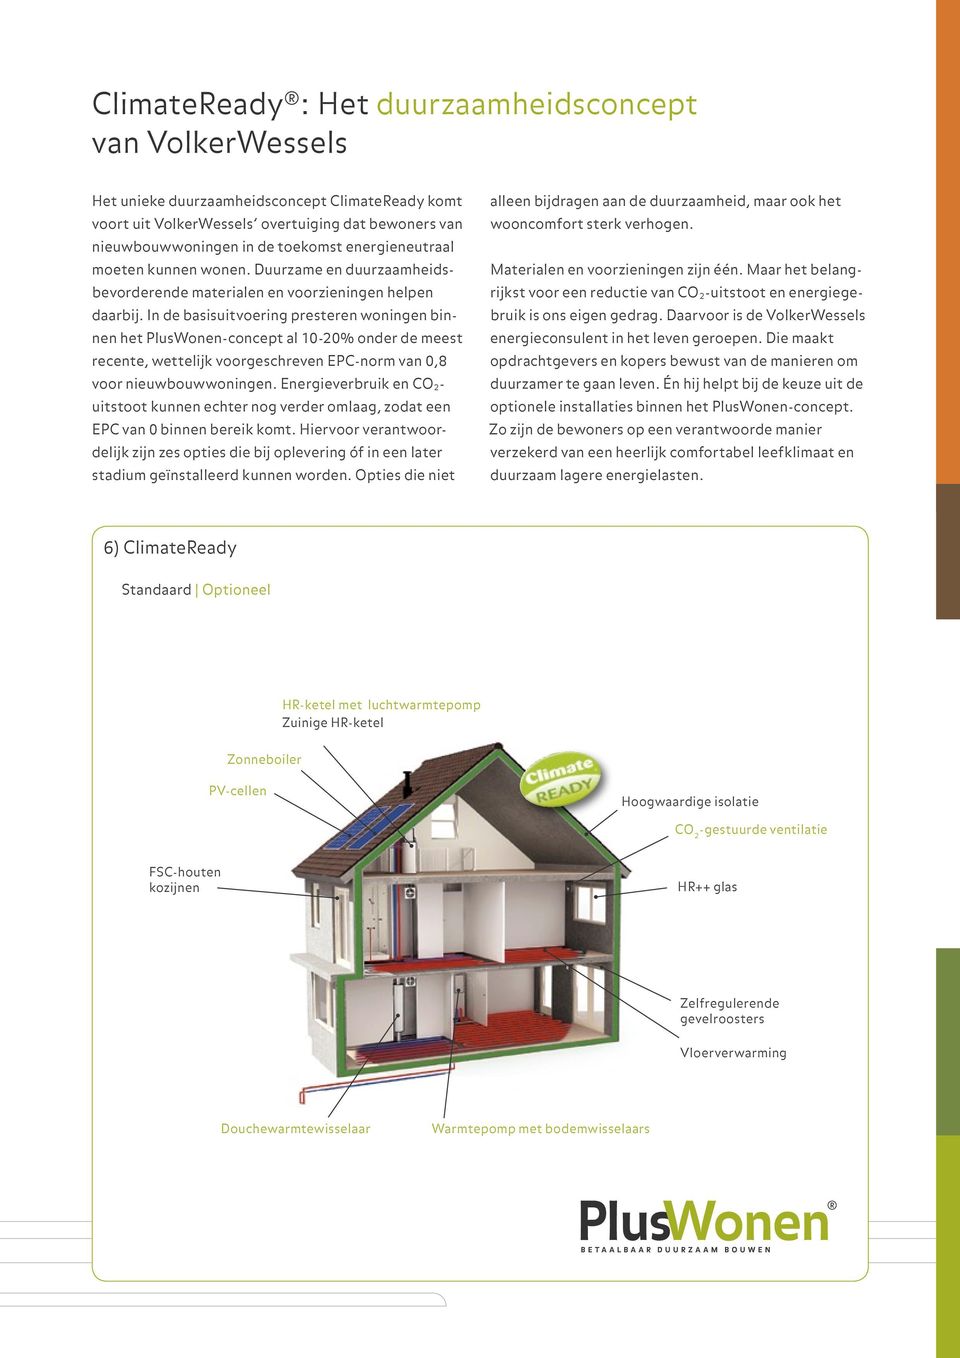 In de basisuitvoering presteren woningen binnen het PlusWonen-concept al 10-20% onder de meest recente, wettelijk voorgeschreven EPC-norm van 0,8 voor nieuwbouwwoningen.